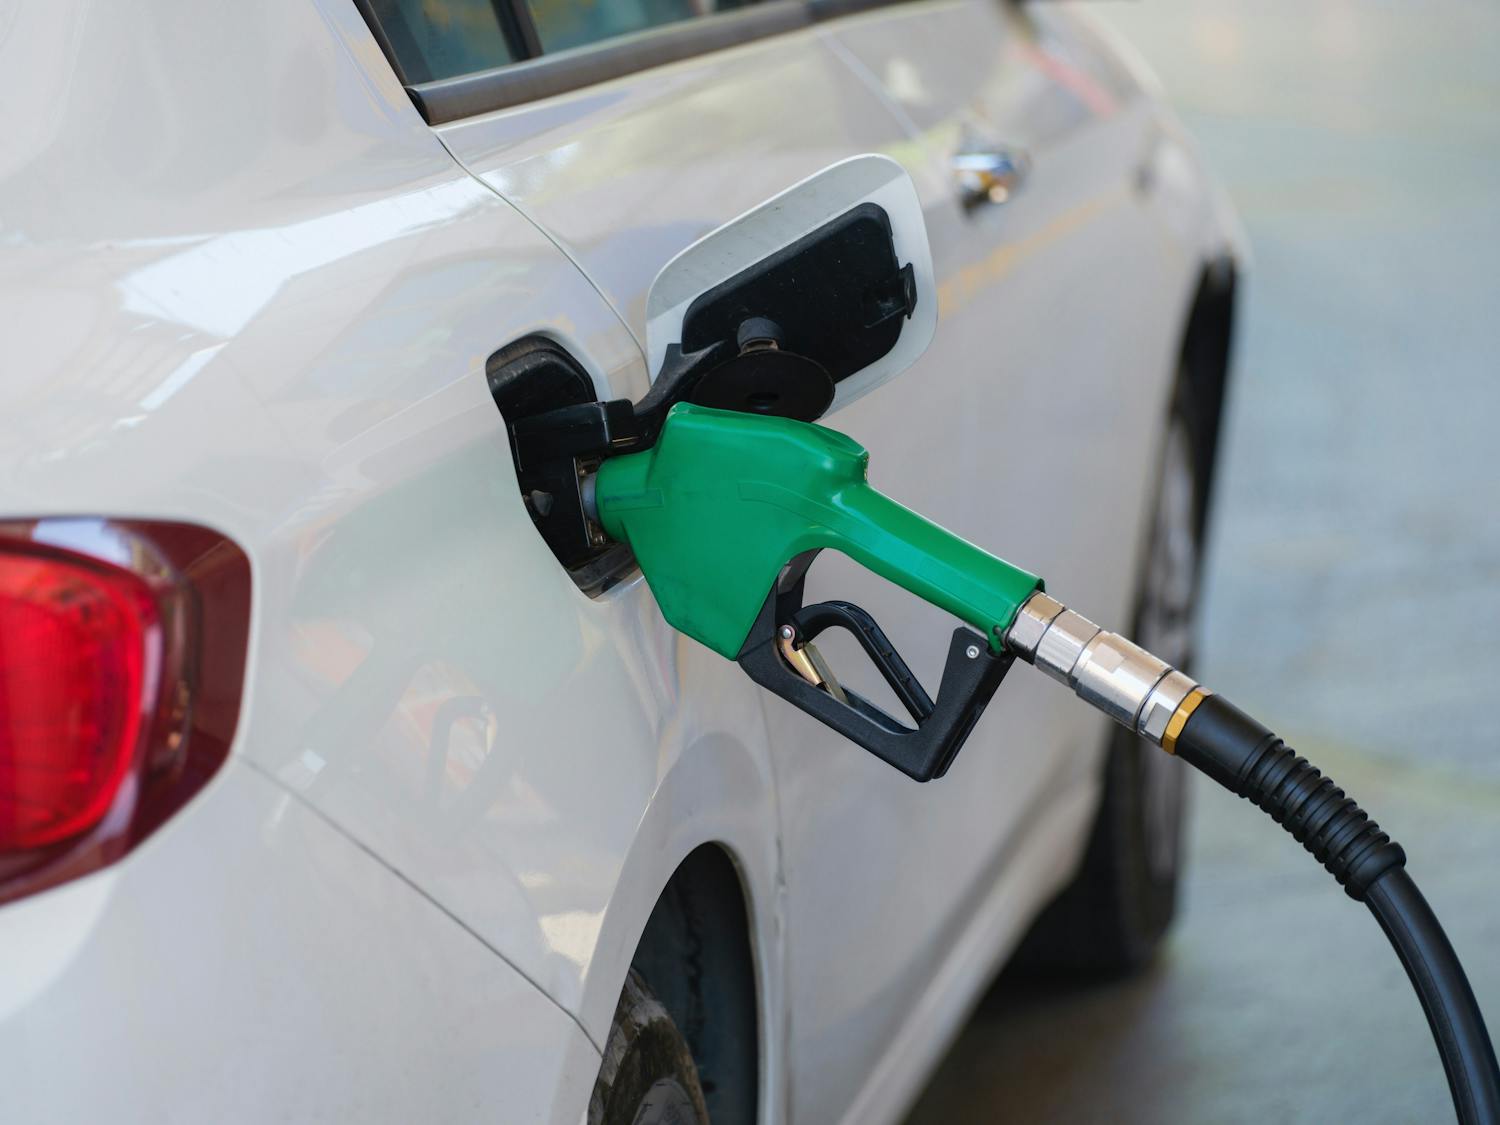 La benzina diventa molto più economica in breve tempo, ma i prezzi del petrolio stanno aumentando